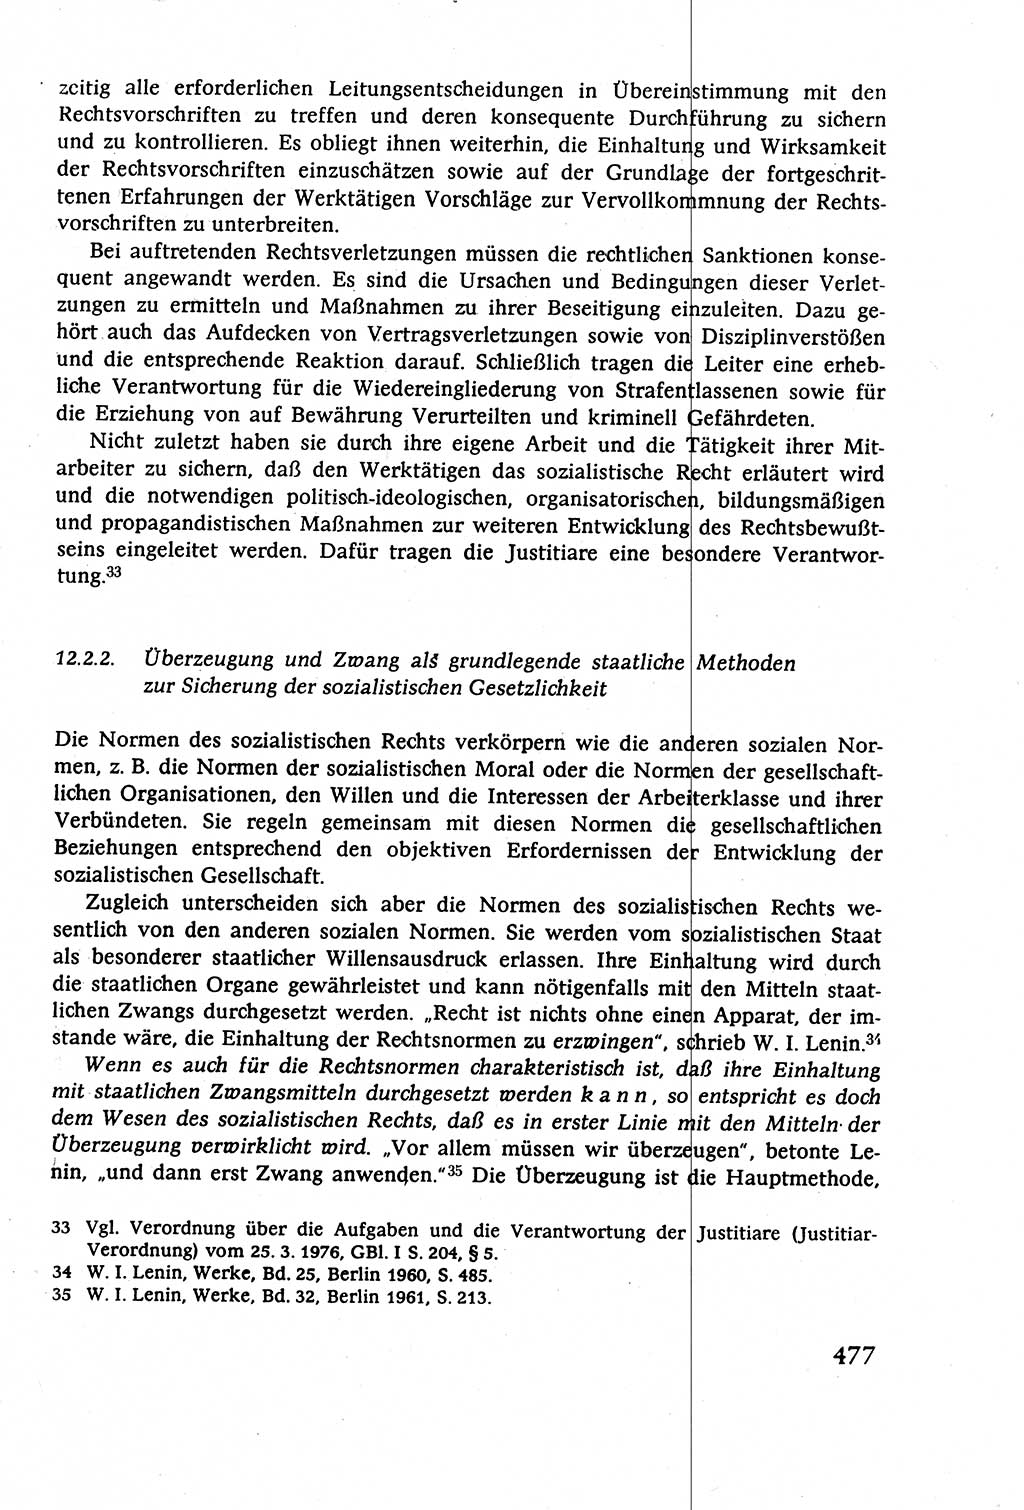 Staatsrecht der DDR (Deutsche Demokratische Republik), Lehrbuch 1977, Seite 477 (St.-R. DDR Lb. 1977, S. 477)